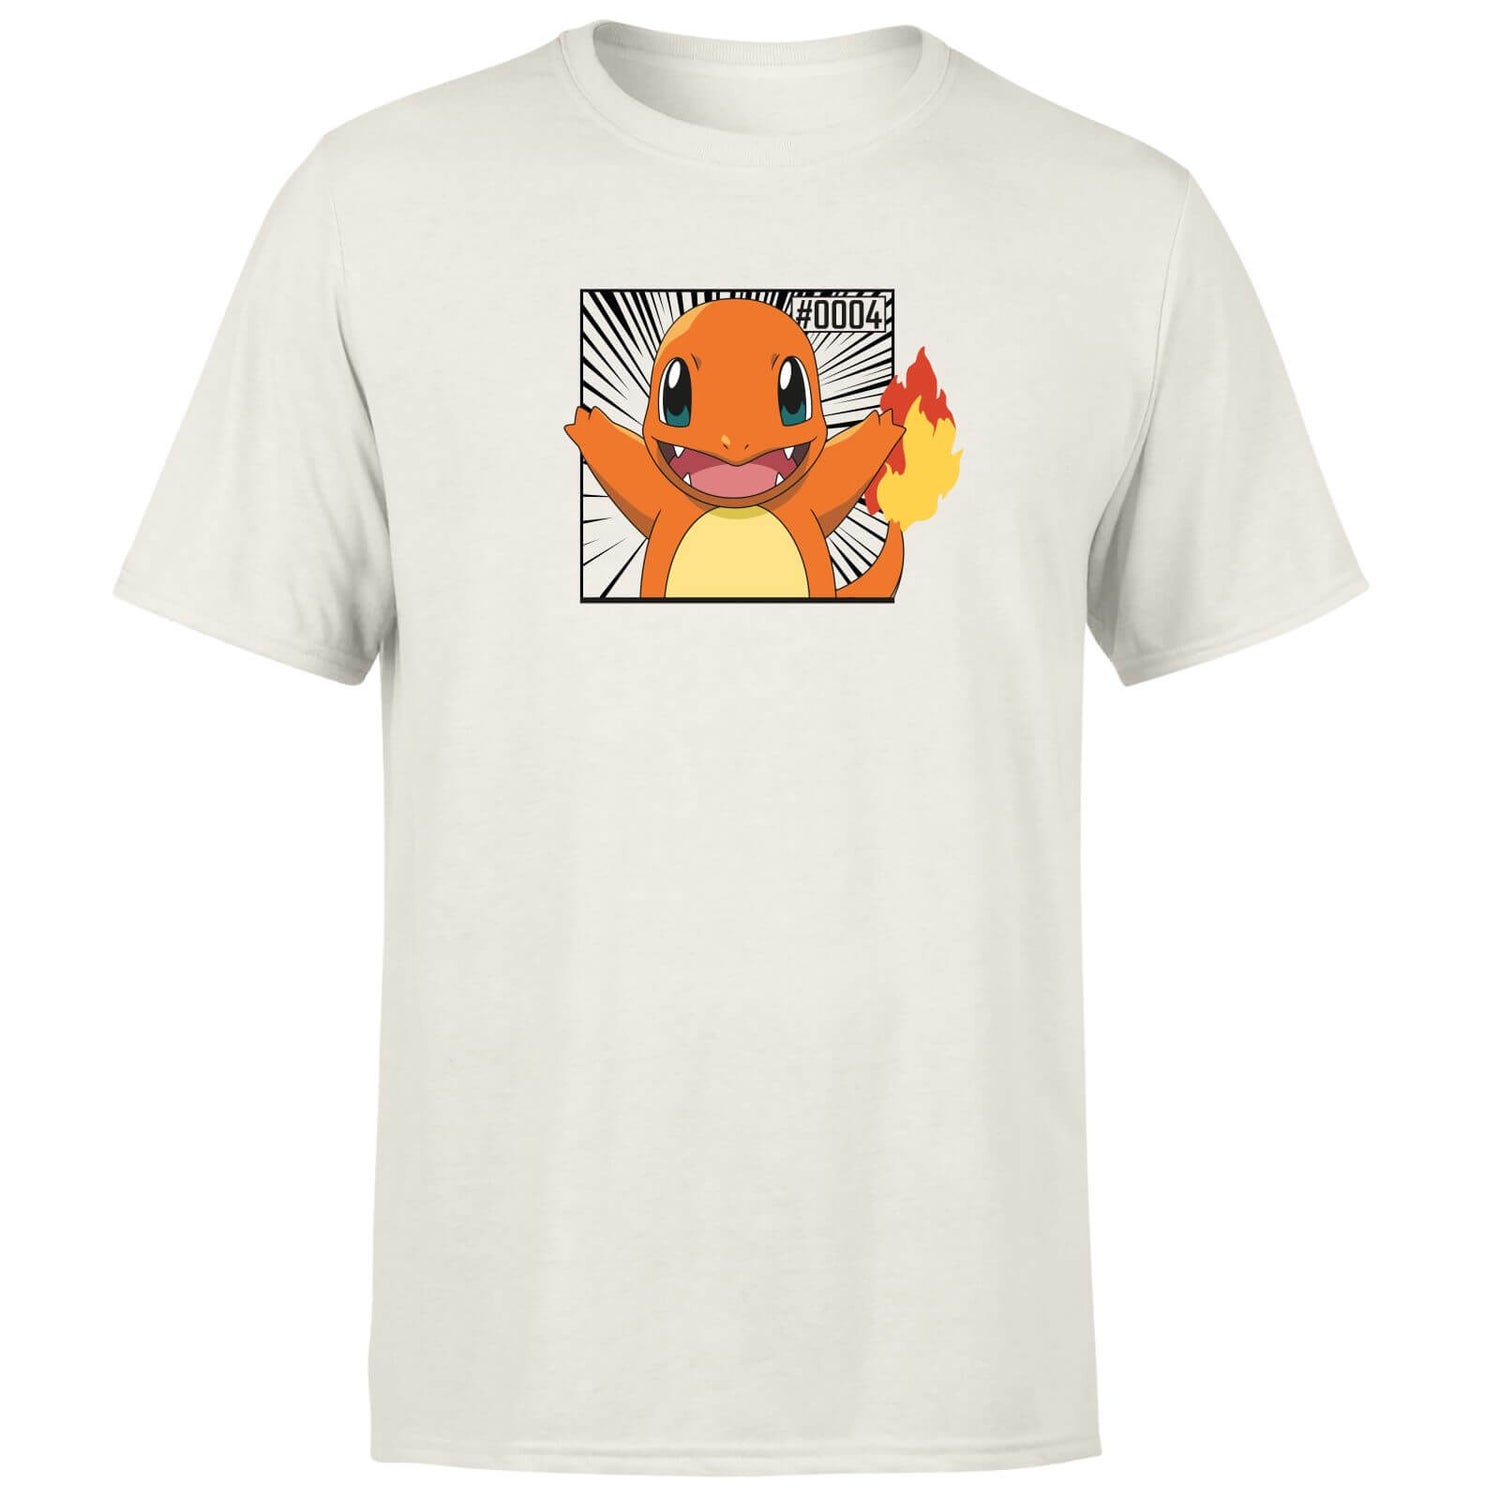 Pokémon Pokédex Charmander #0004 Men's T-Shirt - Cream